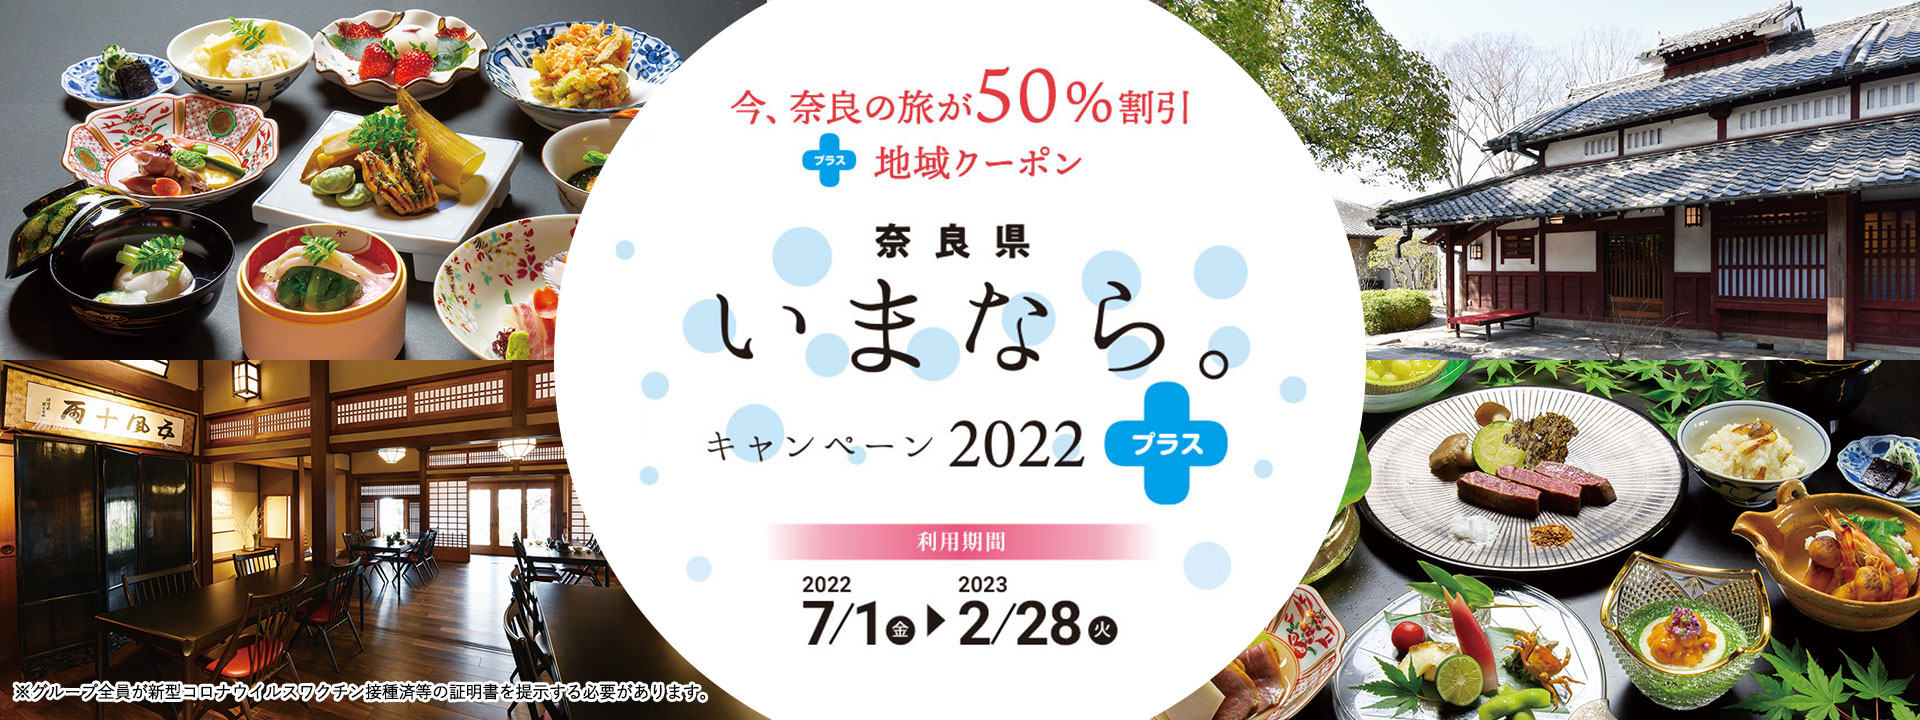 奈良県民限定「春のいまなら。キャンペーン2022」